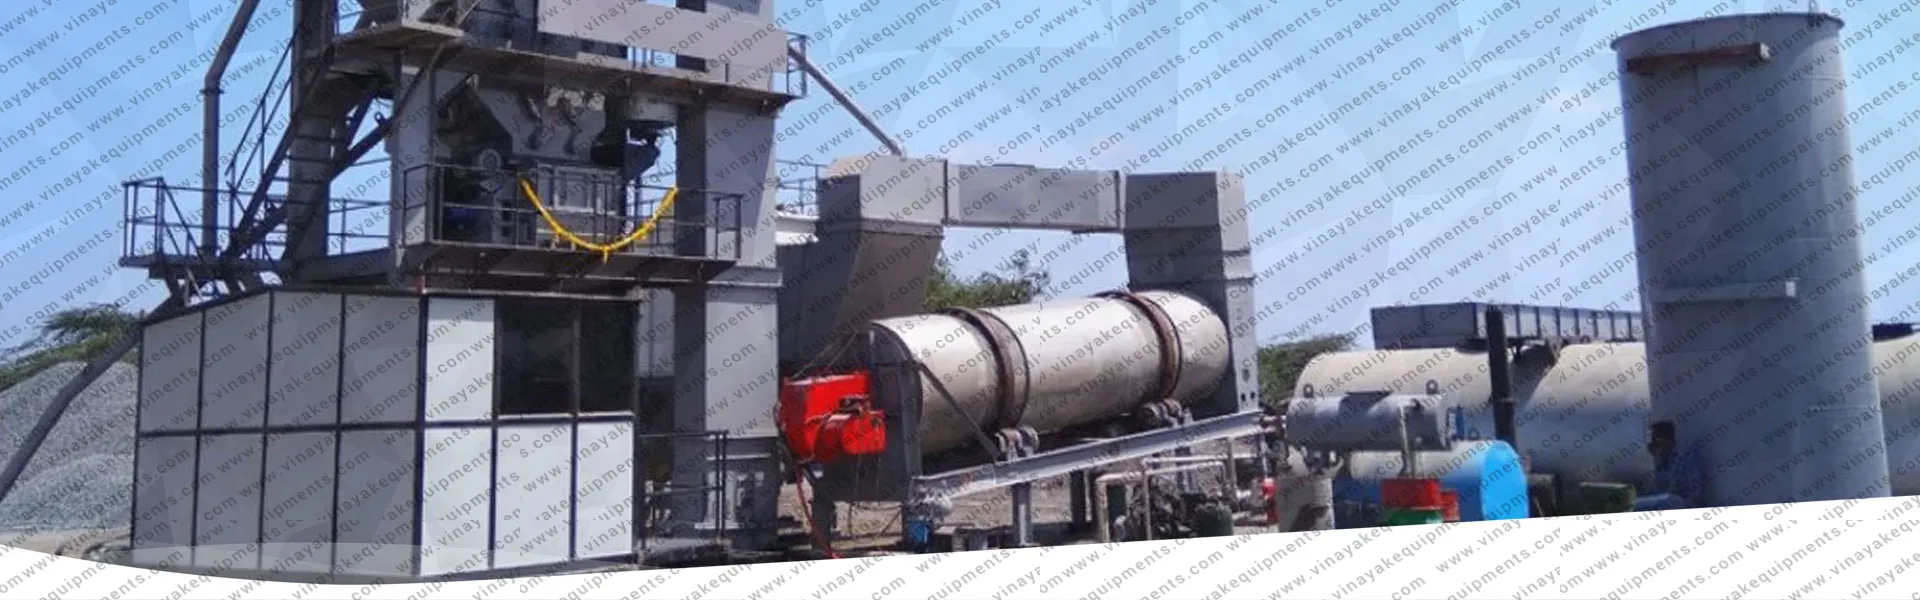 Asphalt batch mix plant manufacturer in India, gujarat, ahmedabad